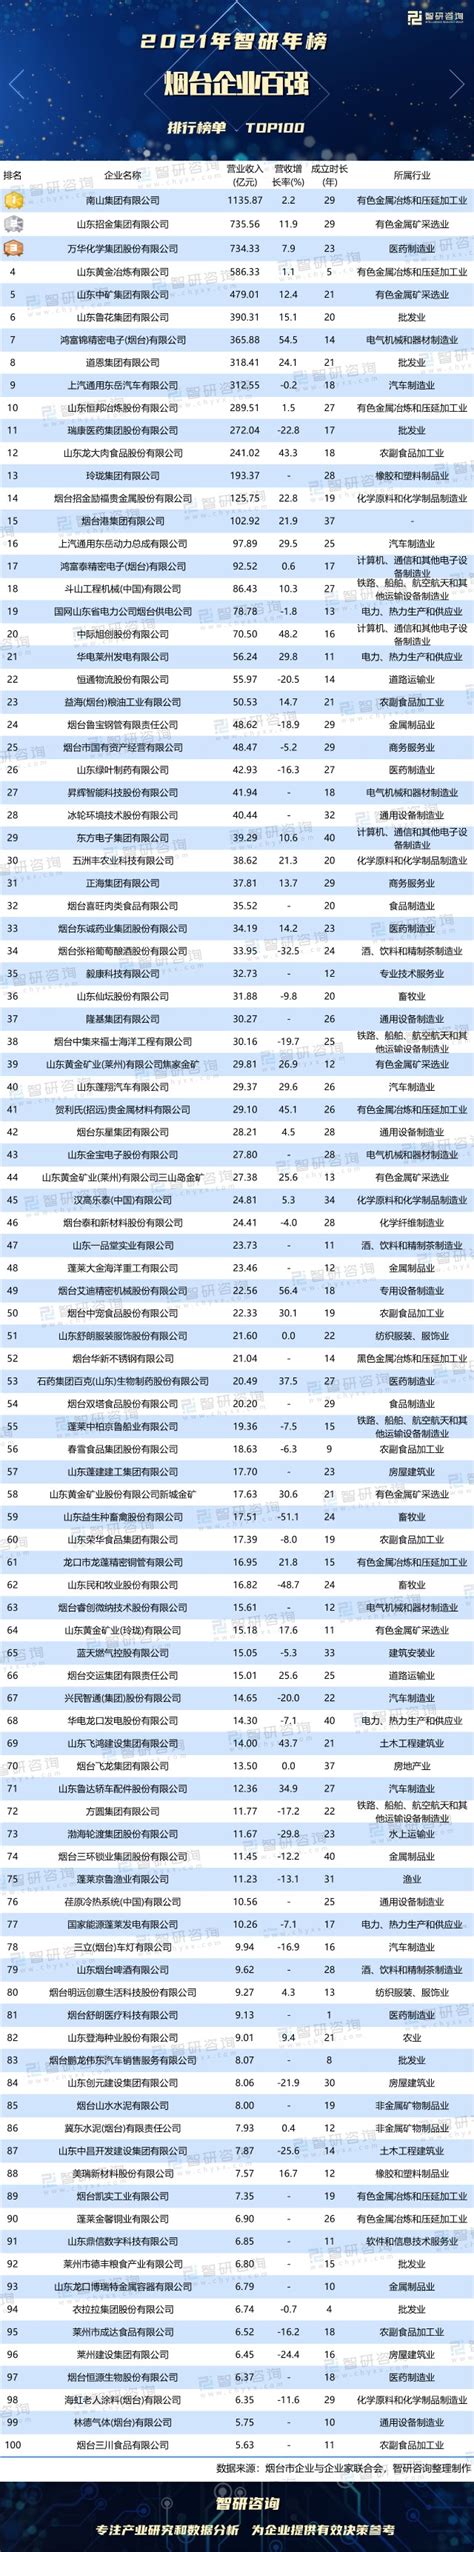 烟台排名前十的企业-鲁花上榜(花生油好评度高)-排行榜123网